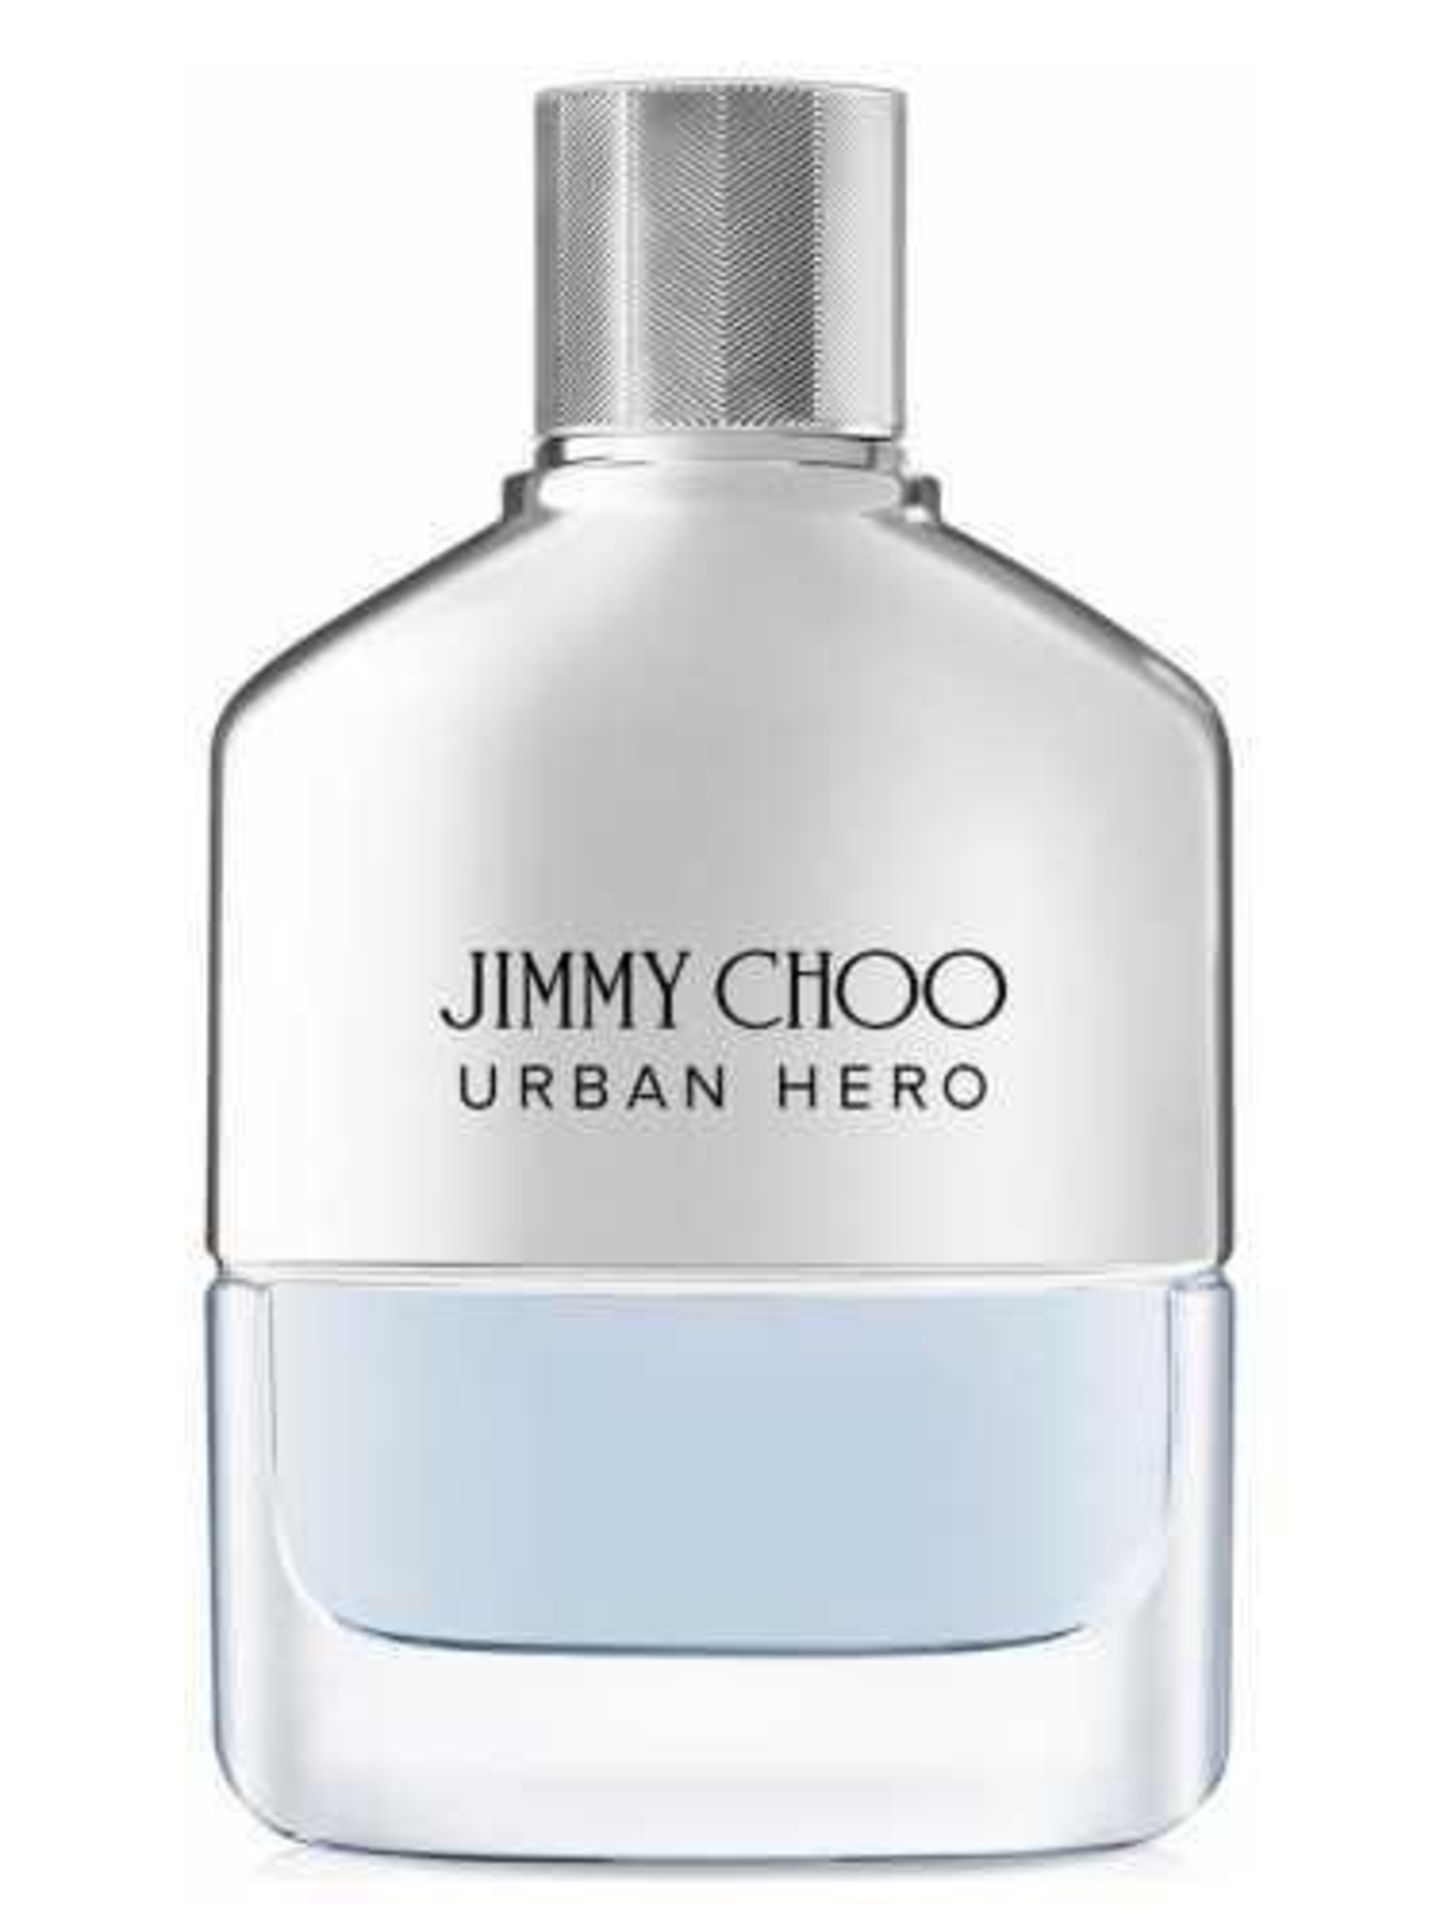 RRP £80 Unboxed Jimmy Choo Urban Hero Perfume (Ex Display)